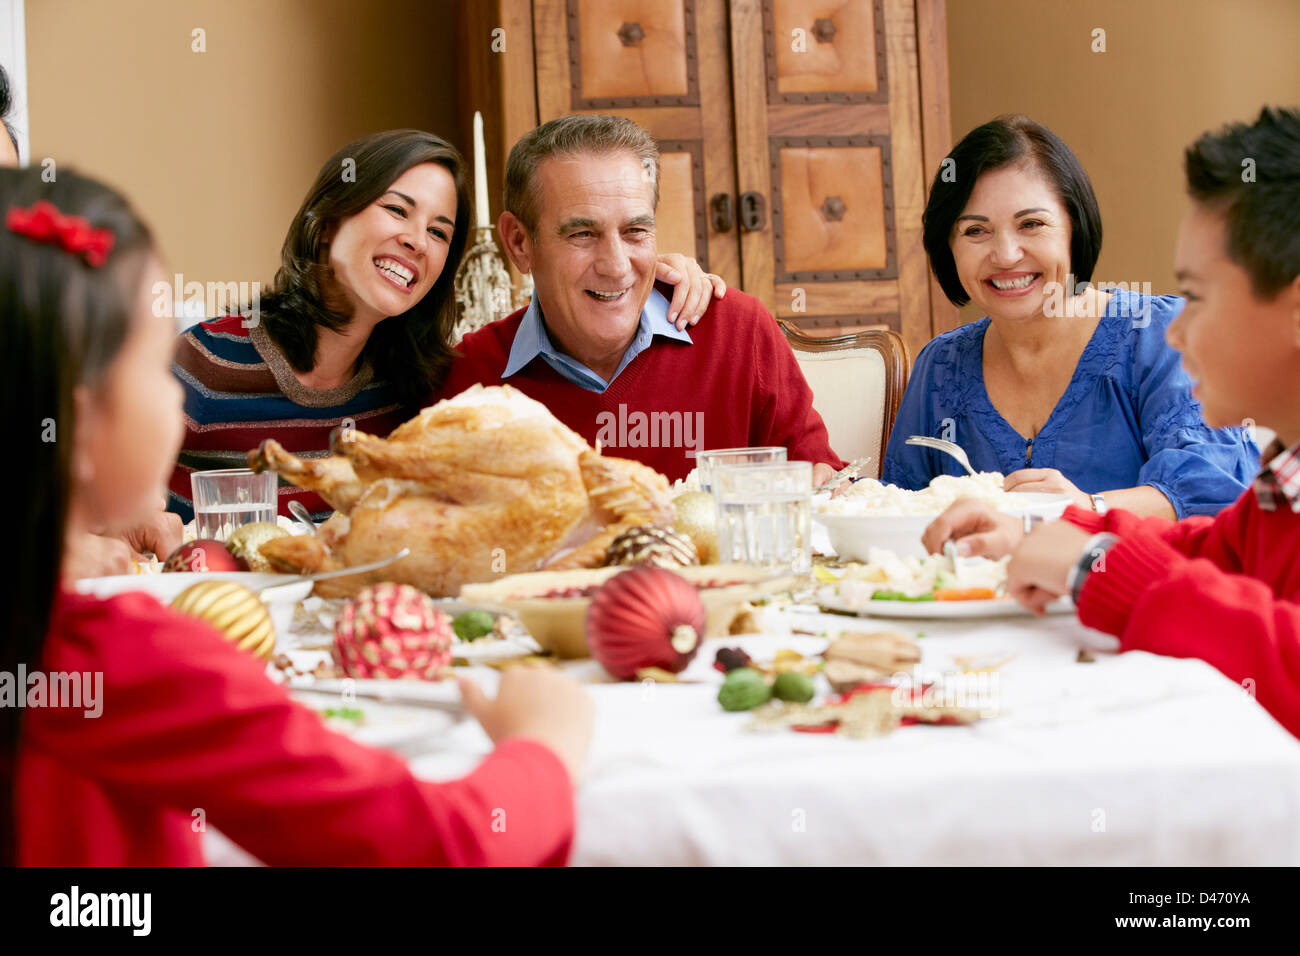 Multi Generation Family Celebrating avec repas de Noël Banque D'Images